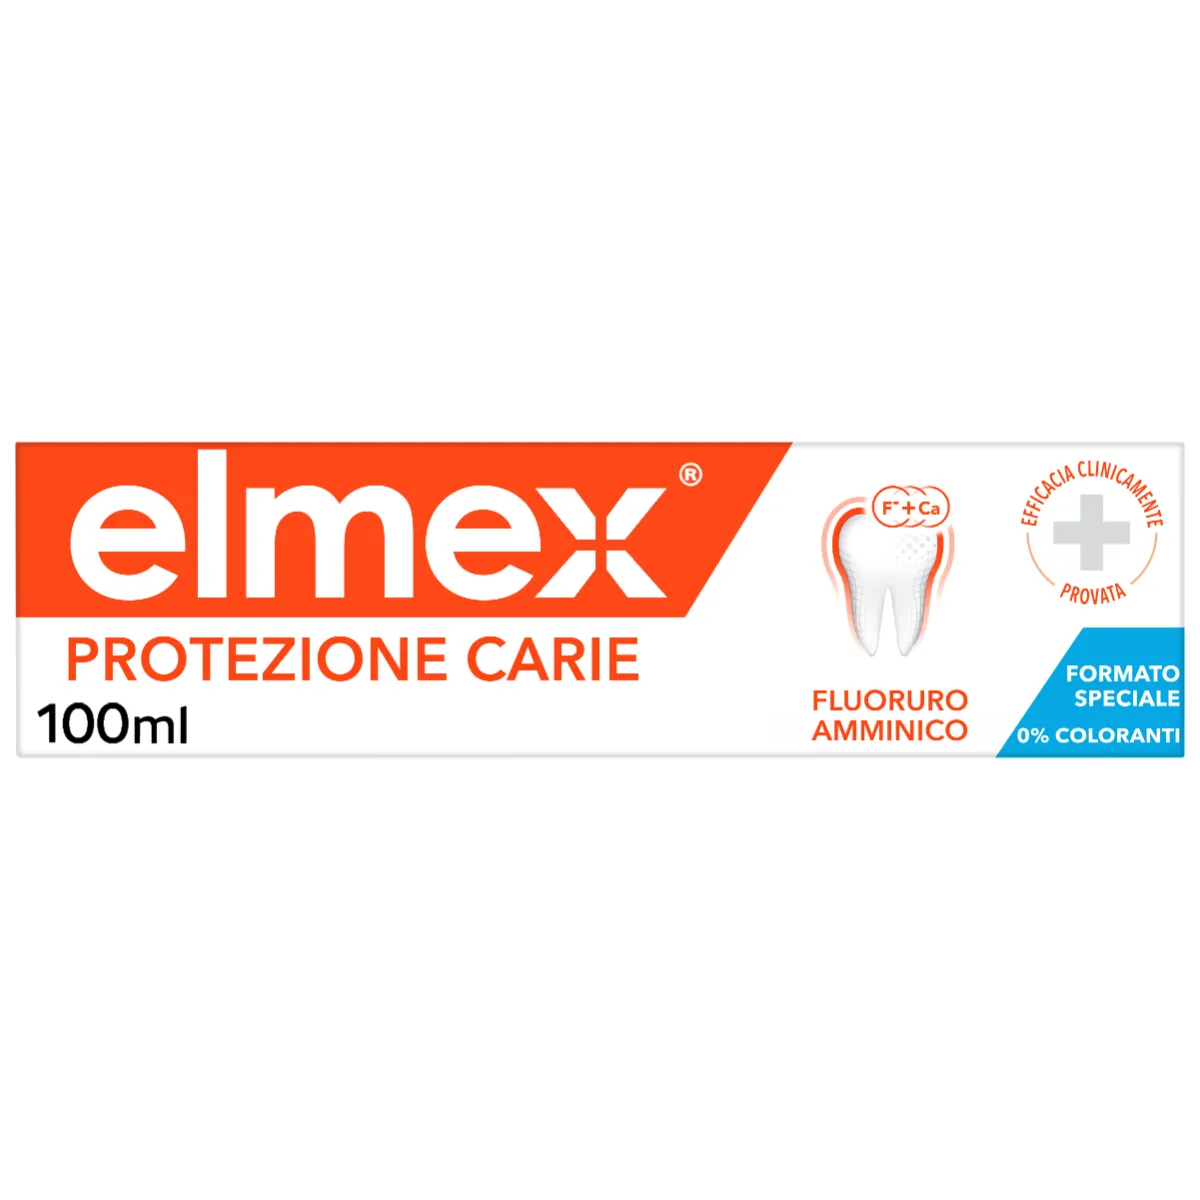 Elmex Protezione Carie Dentifricio 100 ml 